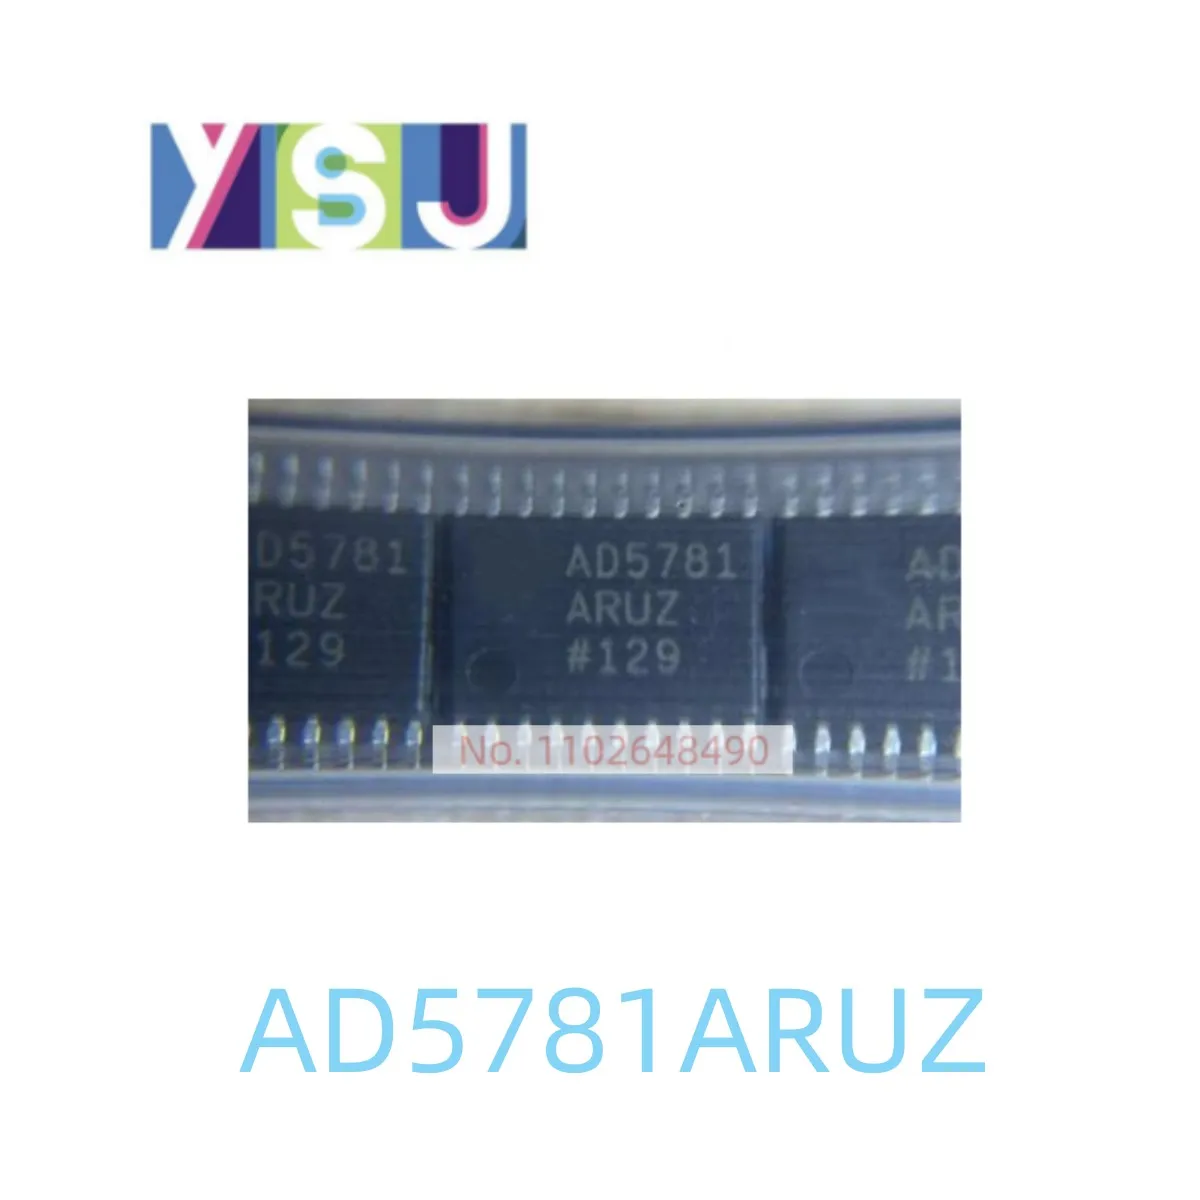 AD5781ARUZ IC Zbrusu Nový Mikroprocesor EncapsulationTSSOP20